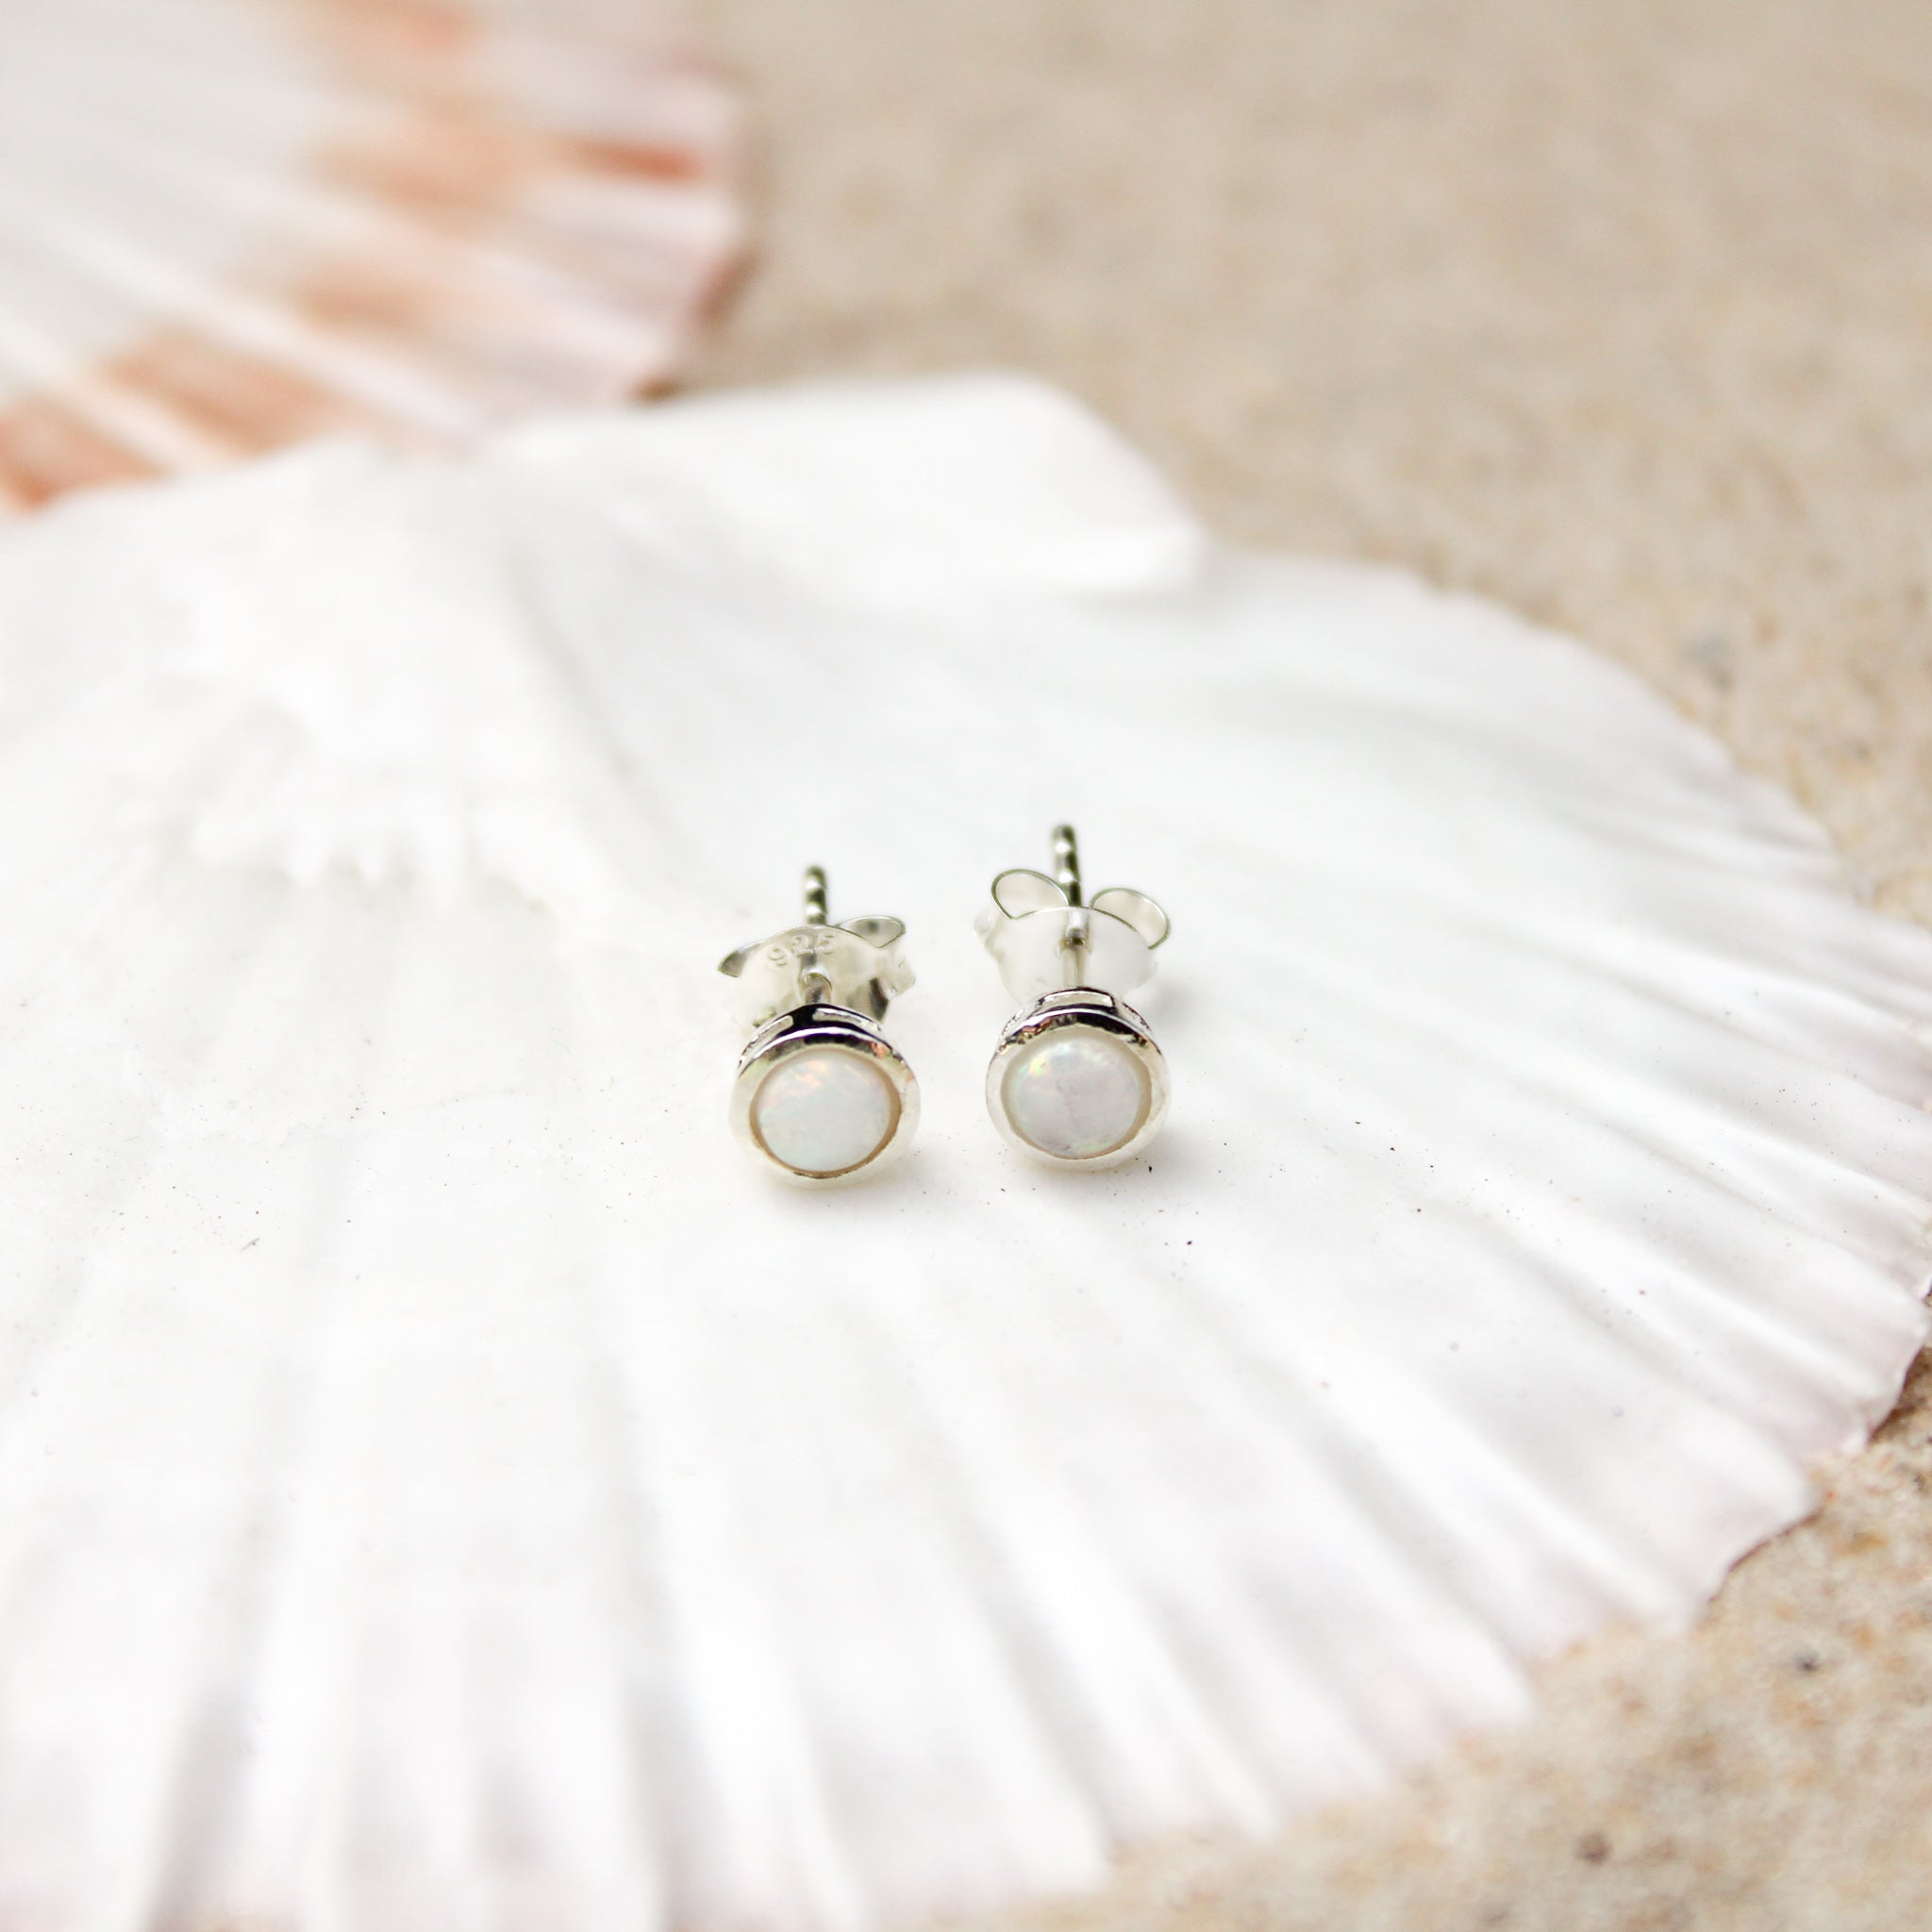 White opal stud earrings